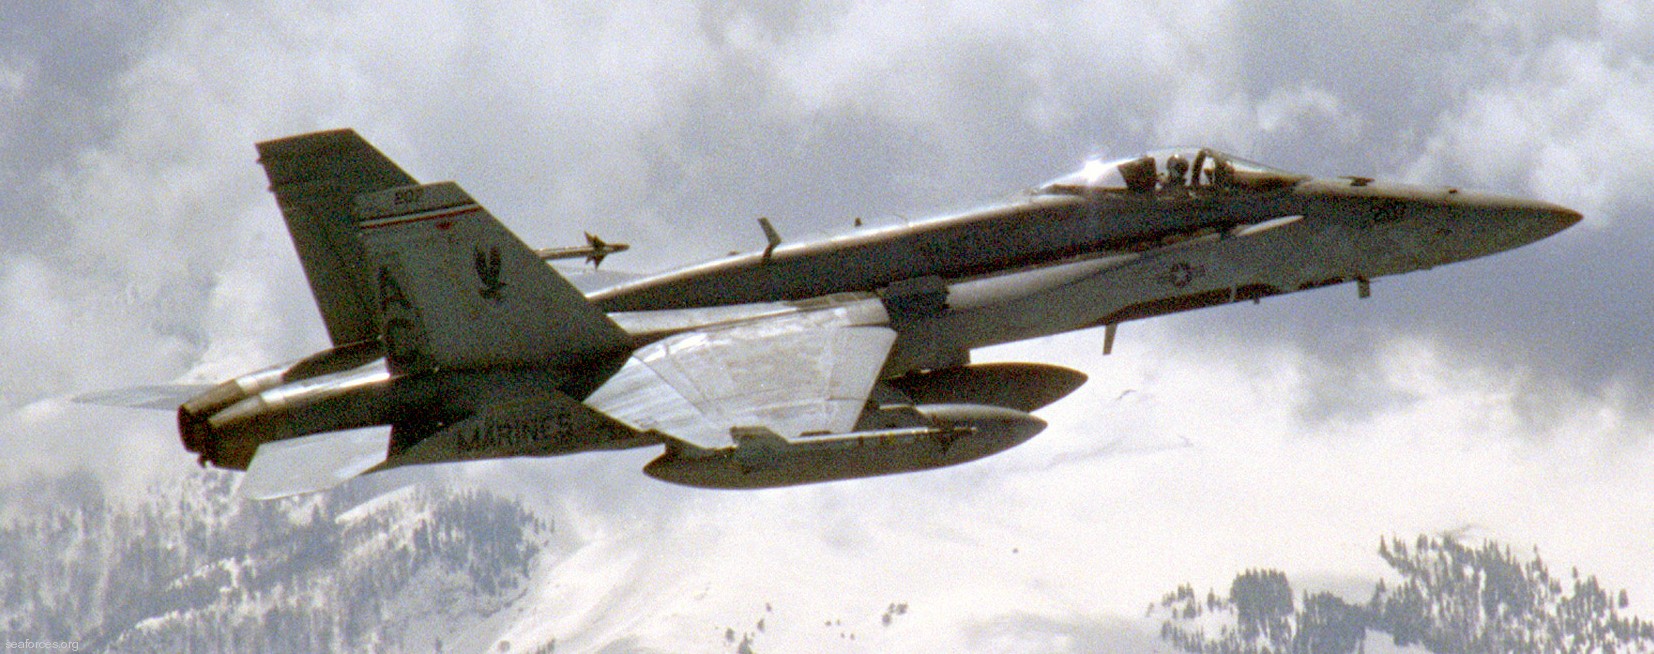 vmfa-115 silver eagles marine fighter attack squadron f/a-18a+ hornet 59